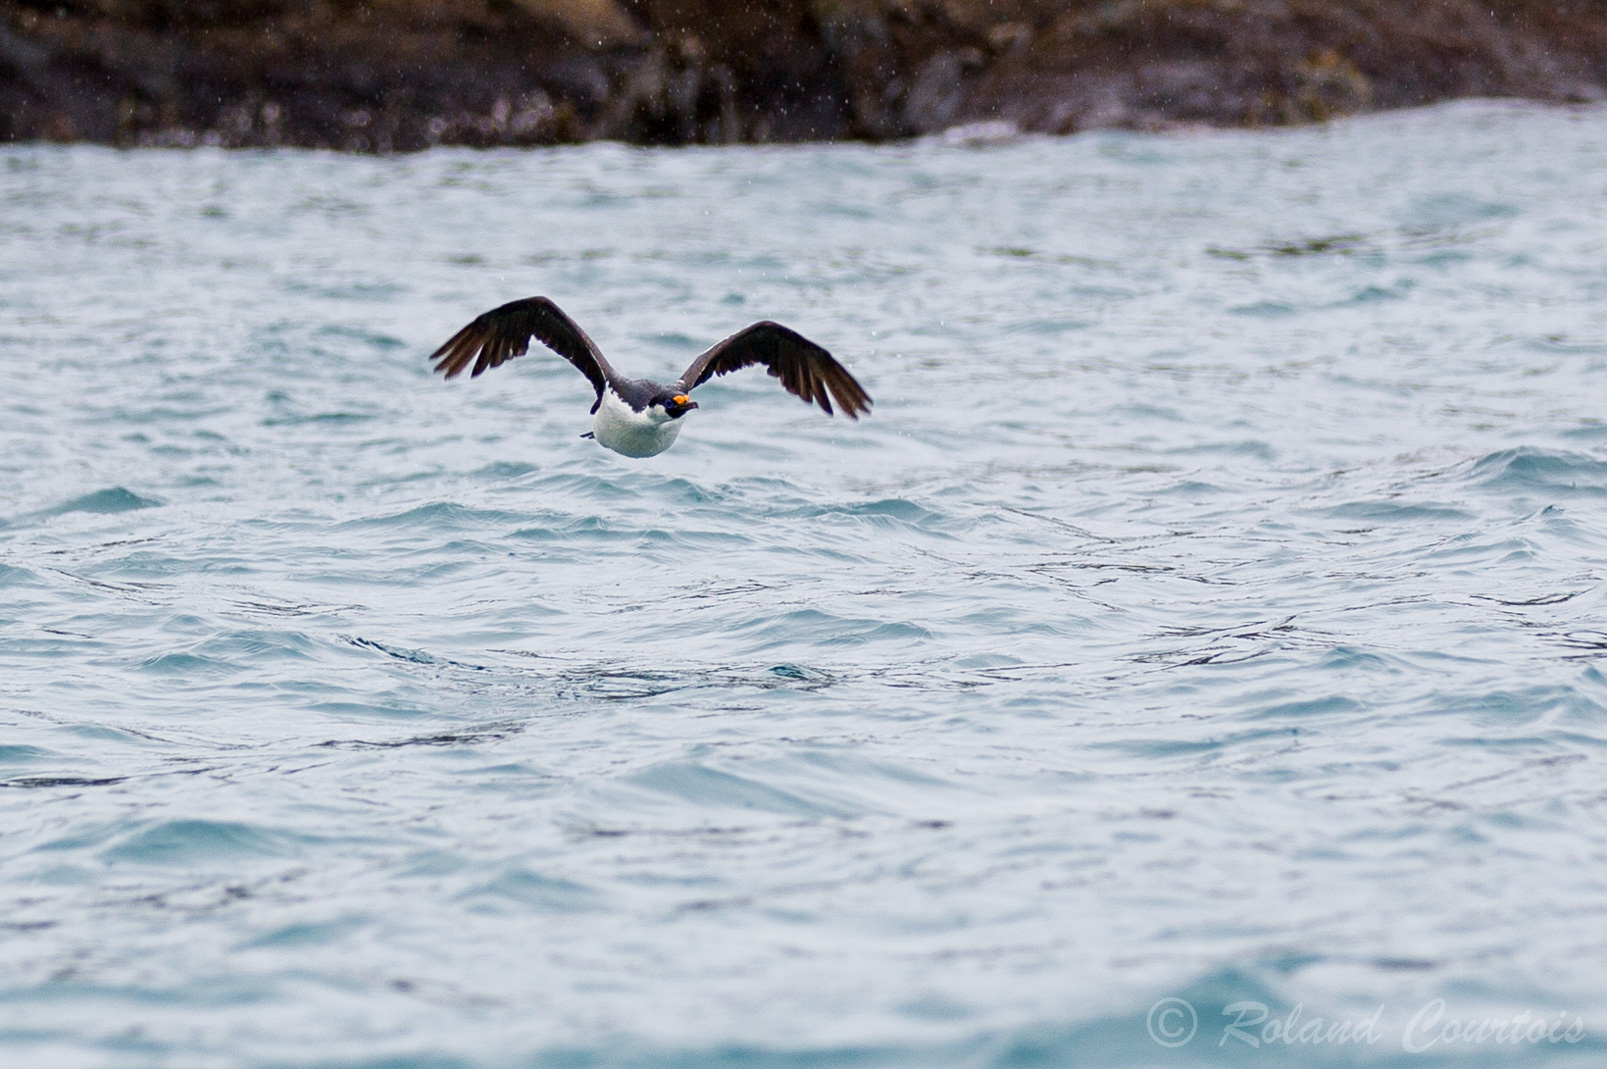 Le Cormoran impérial a un comportement en vol très caractéristique. En effet il bat très vivement de ses ailes ce qui étonne souvent pour un oiseau marin.